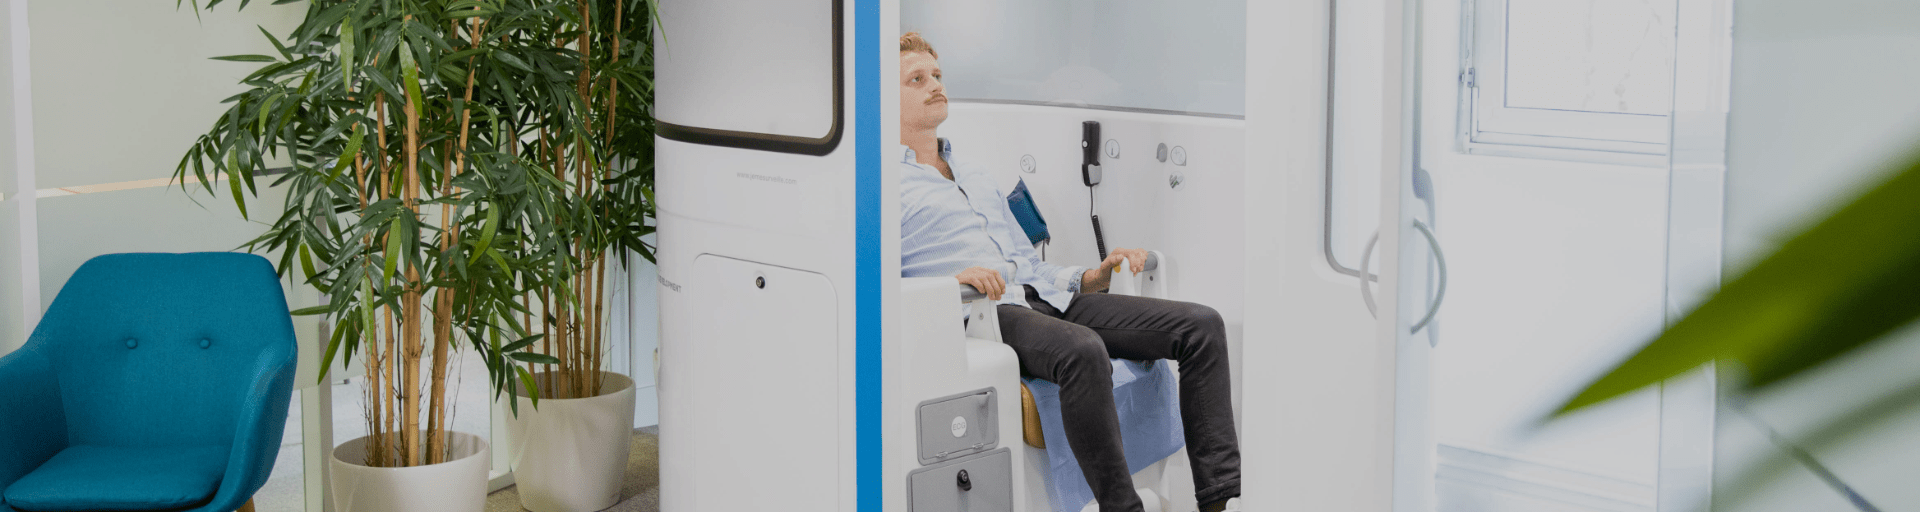 La cabine médicale connectée Flex